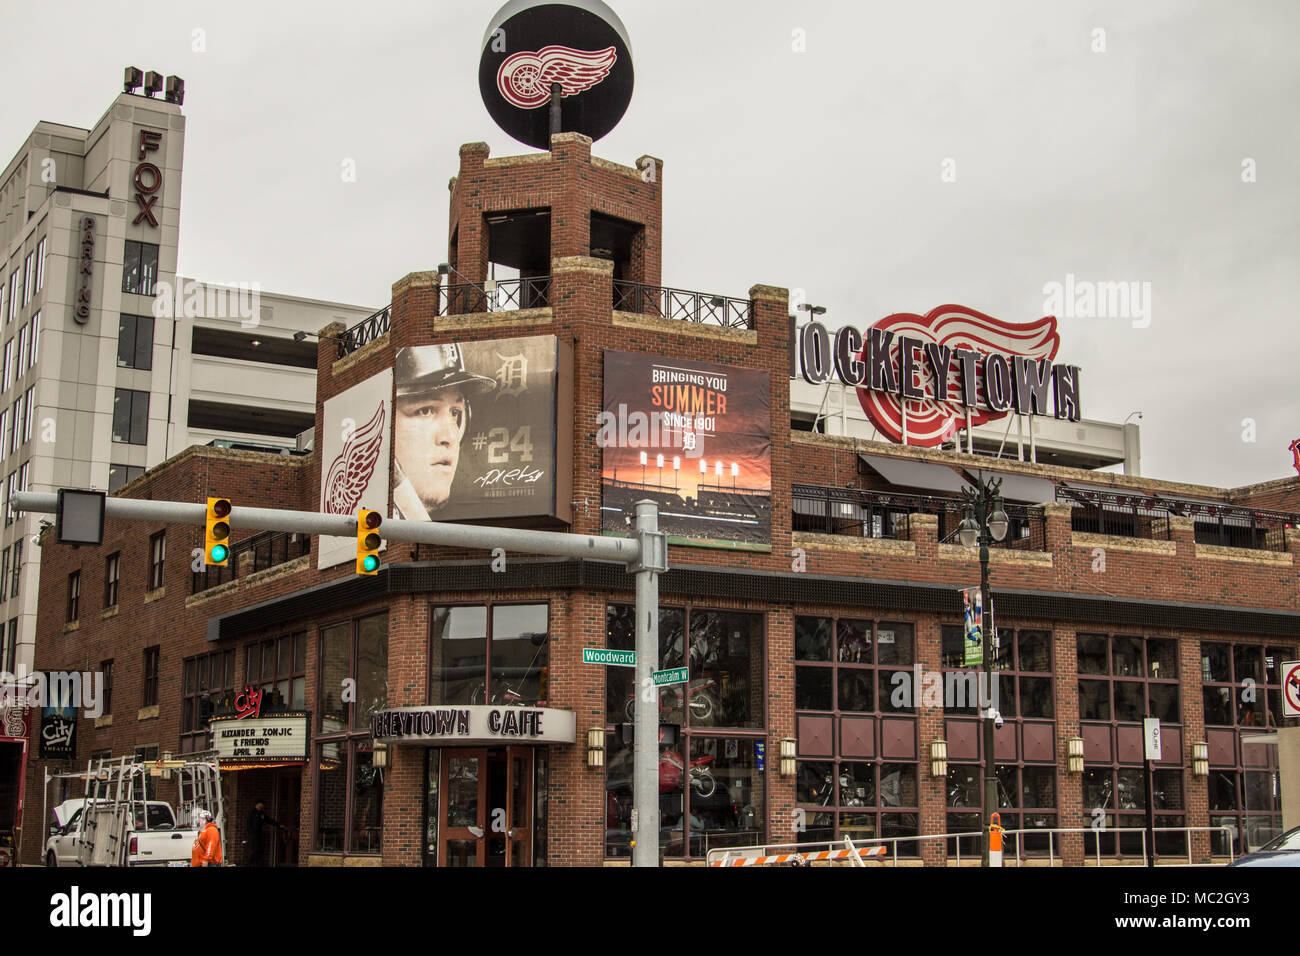 Die Hockeytown Cafe wurde die beste Bar in Detroit gestimmt. Es verfügt über Detroit Tiger und Red Wings Erinnerungsstücke. Stockfoto